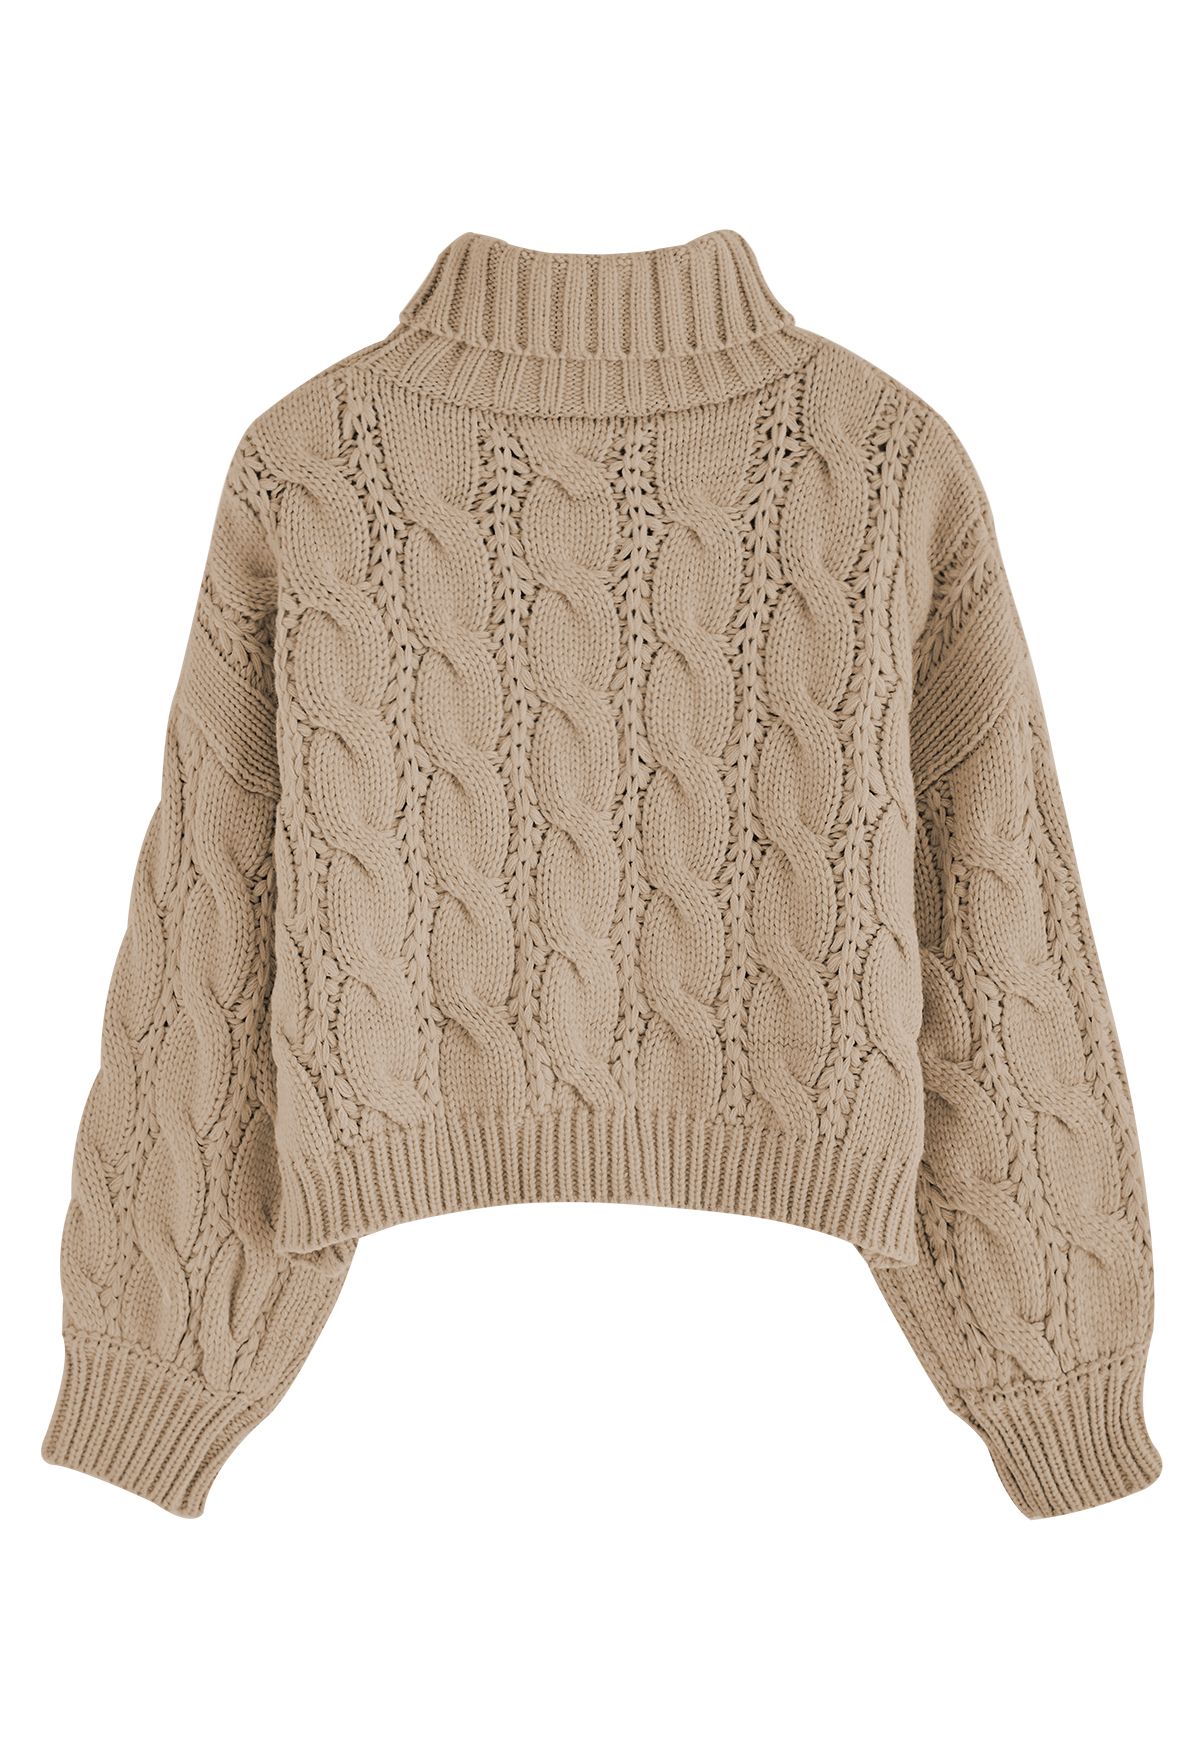 Turtleneck Braid Knit Crop Sweater in Brown